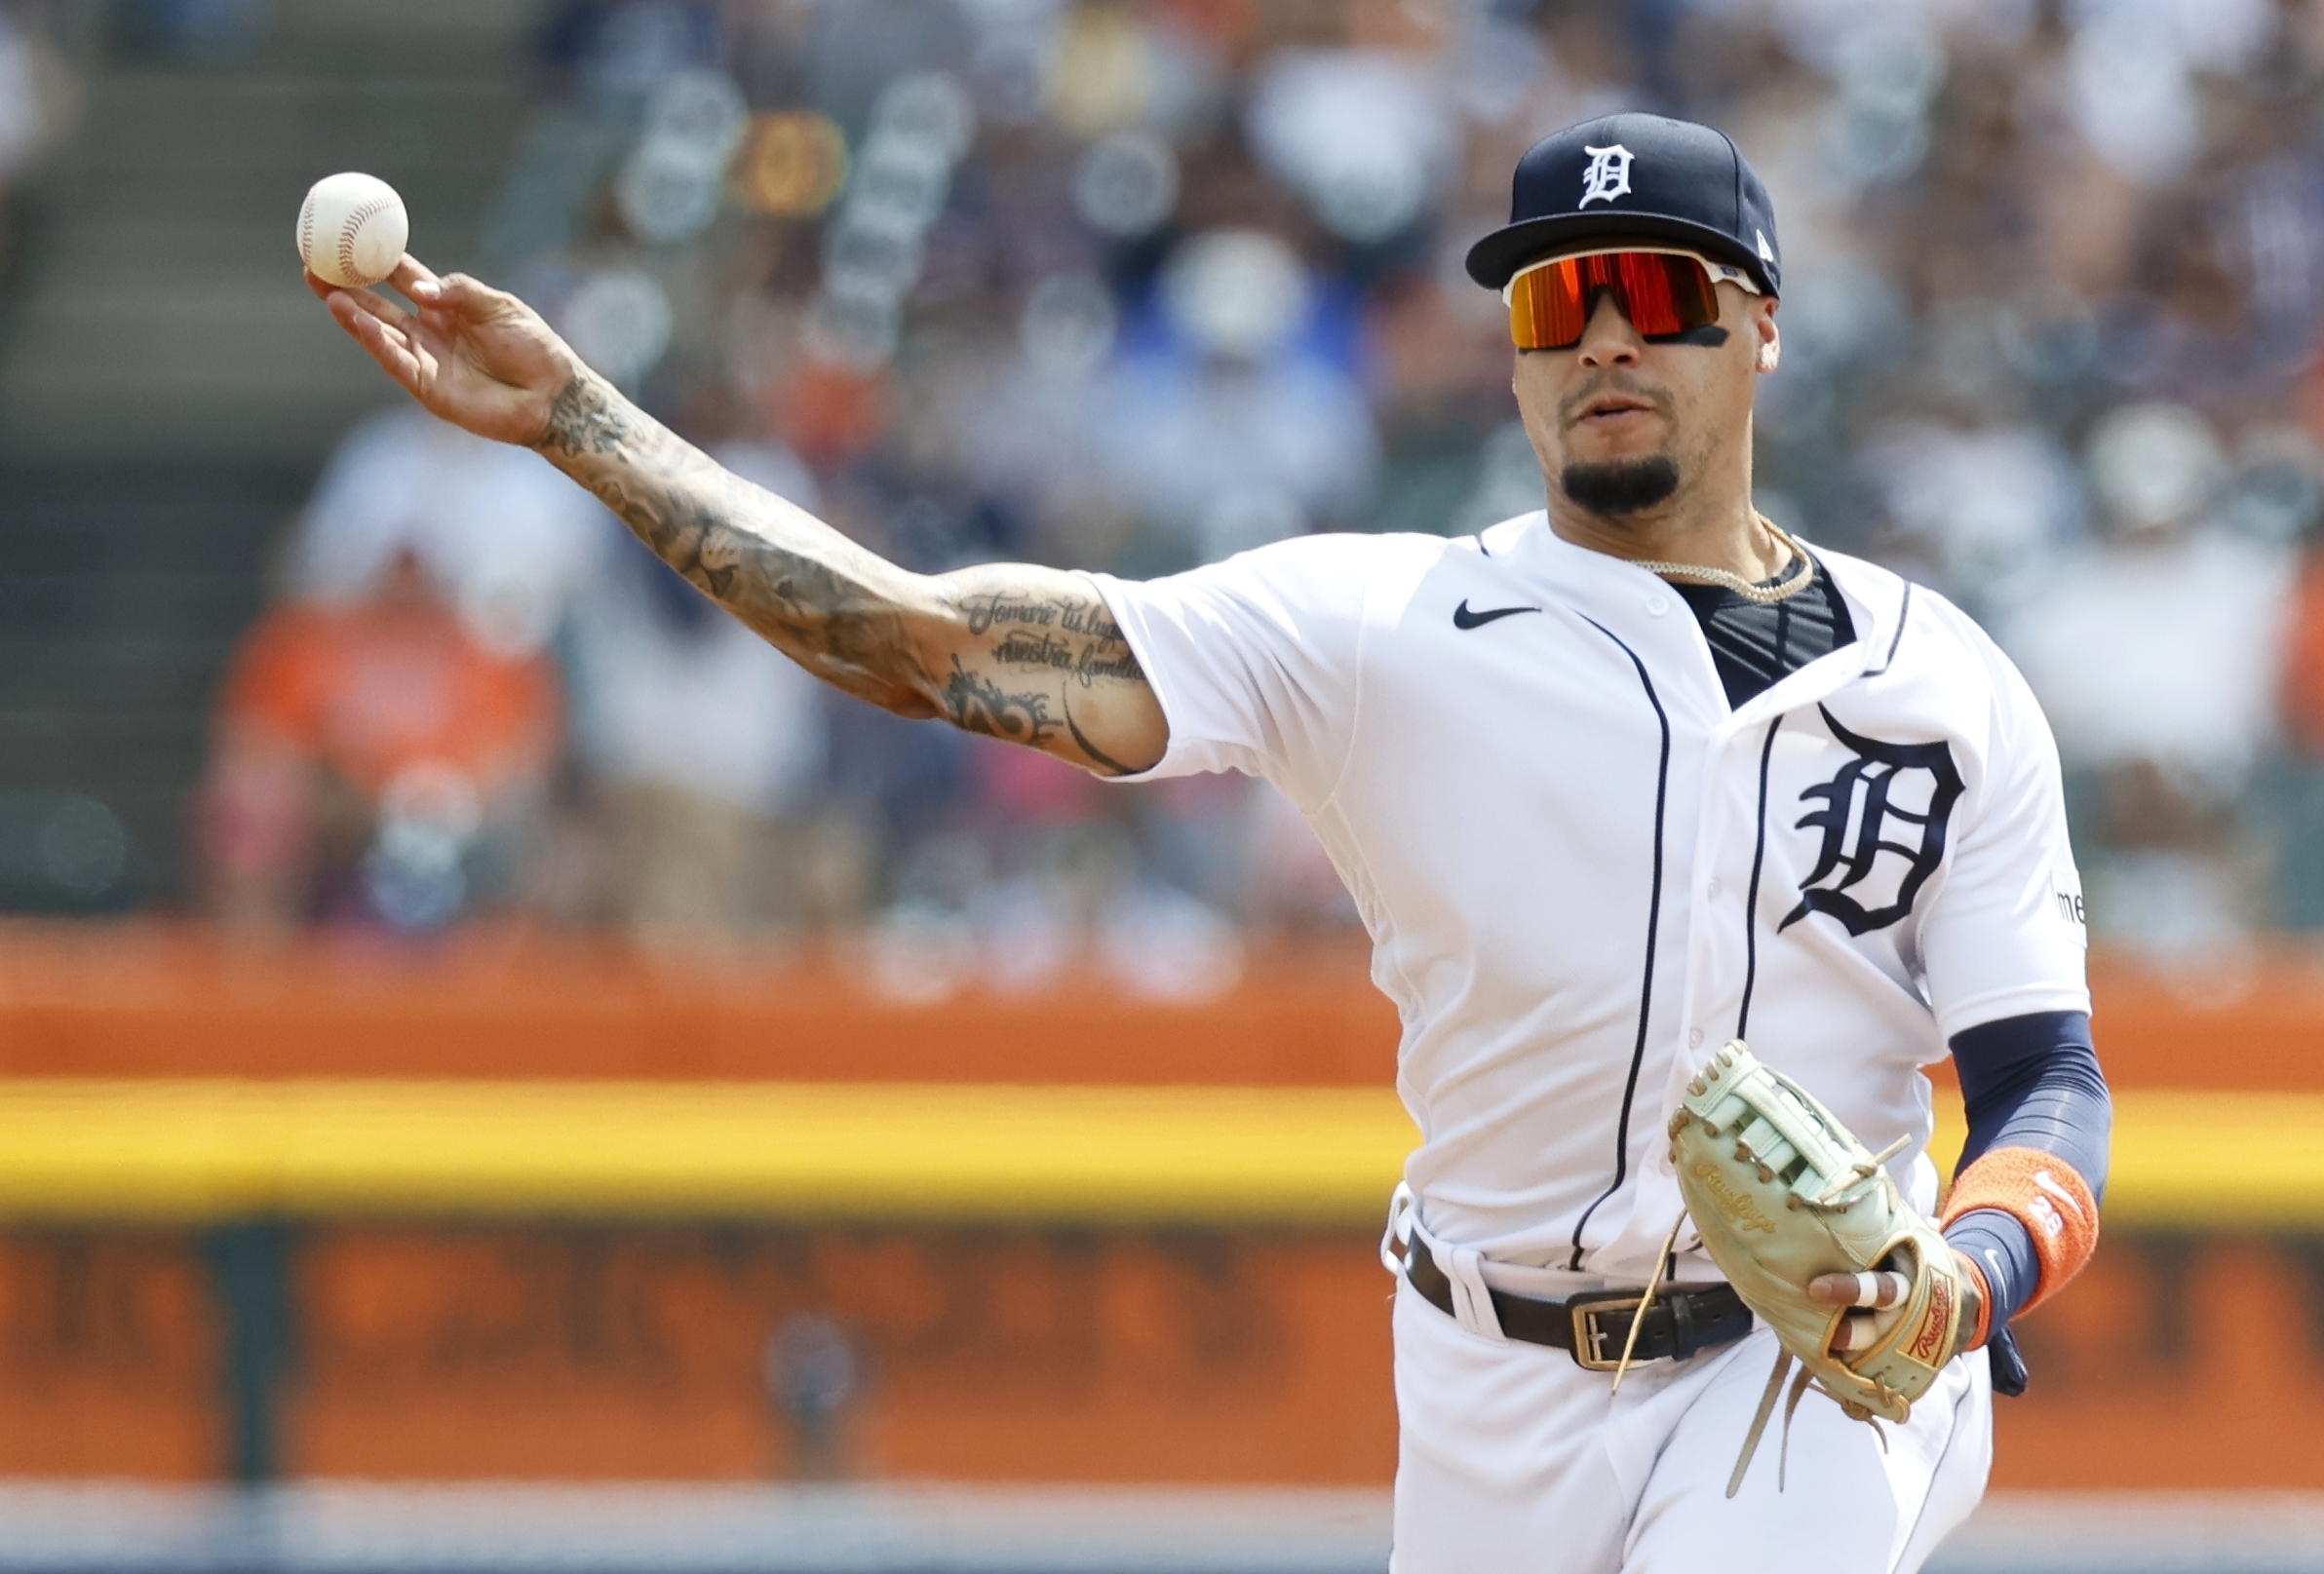 Detroit Tigers: Has Javier Báez turned over a new leaf